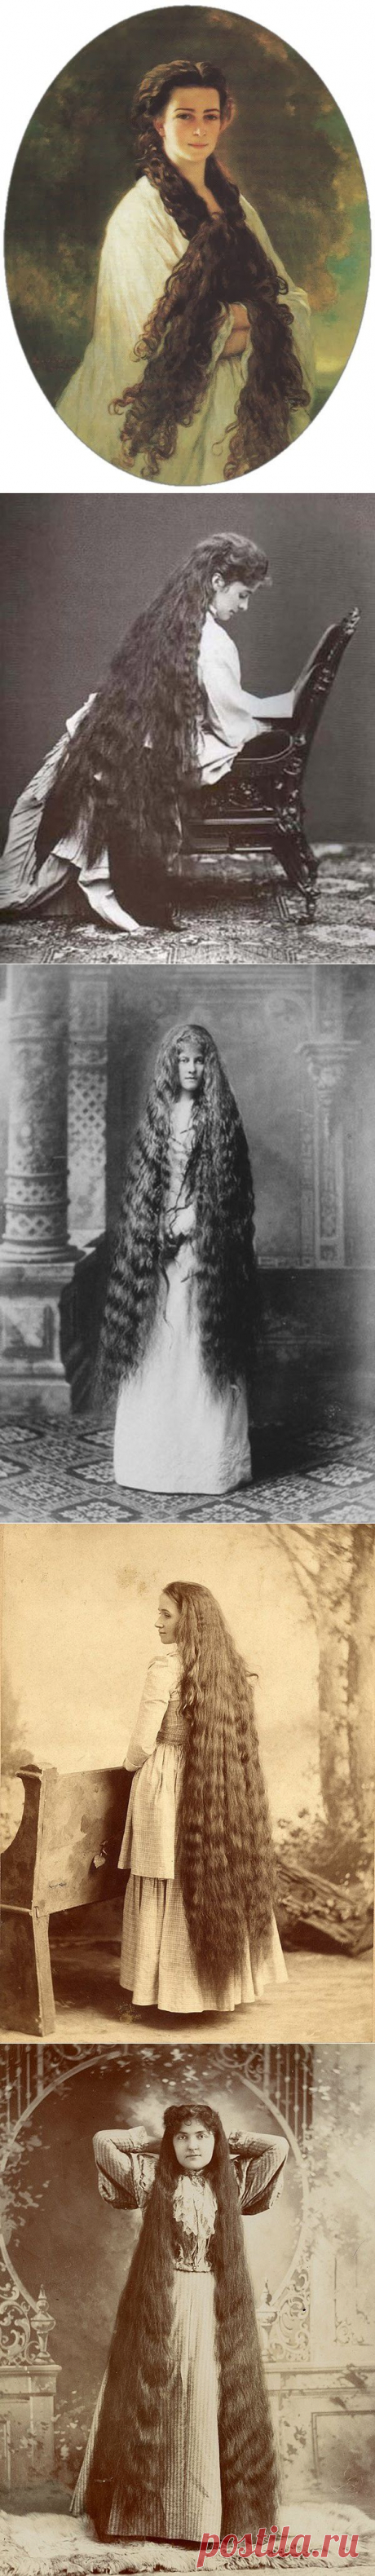 Известные «рапунцели» XIX века. В Европе XIX века длинные волосы для женщины были нормой. И все-таки были особы, чьи роскошные локоны вызывали бурное обсуждение. Хотя с распущенными волосами дамы редко появлялись на публике, но некоторые дали их запечатлеть фотографам или художникам, так что и мы сегодня можем любоваться на эту красоту. Вот некоторые из самых интересных примеров роскошных длинных волос.